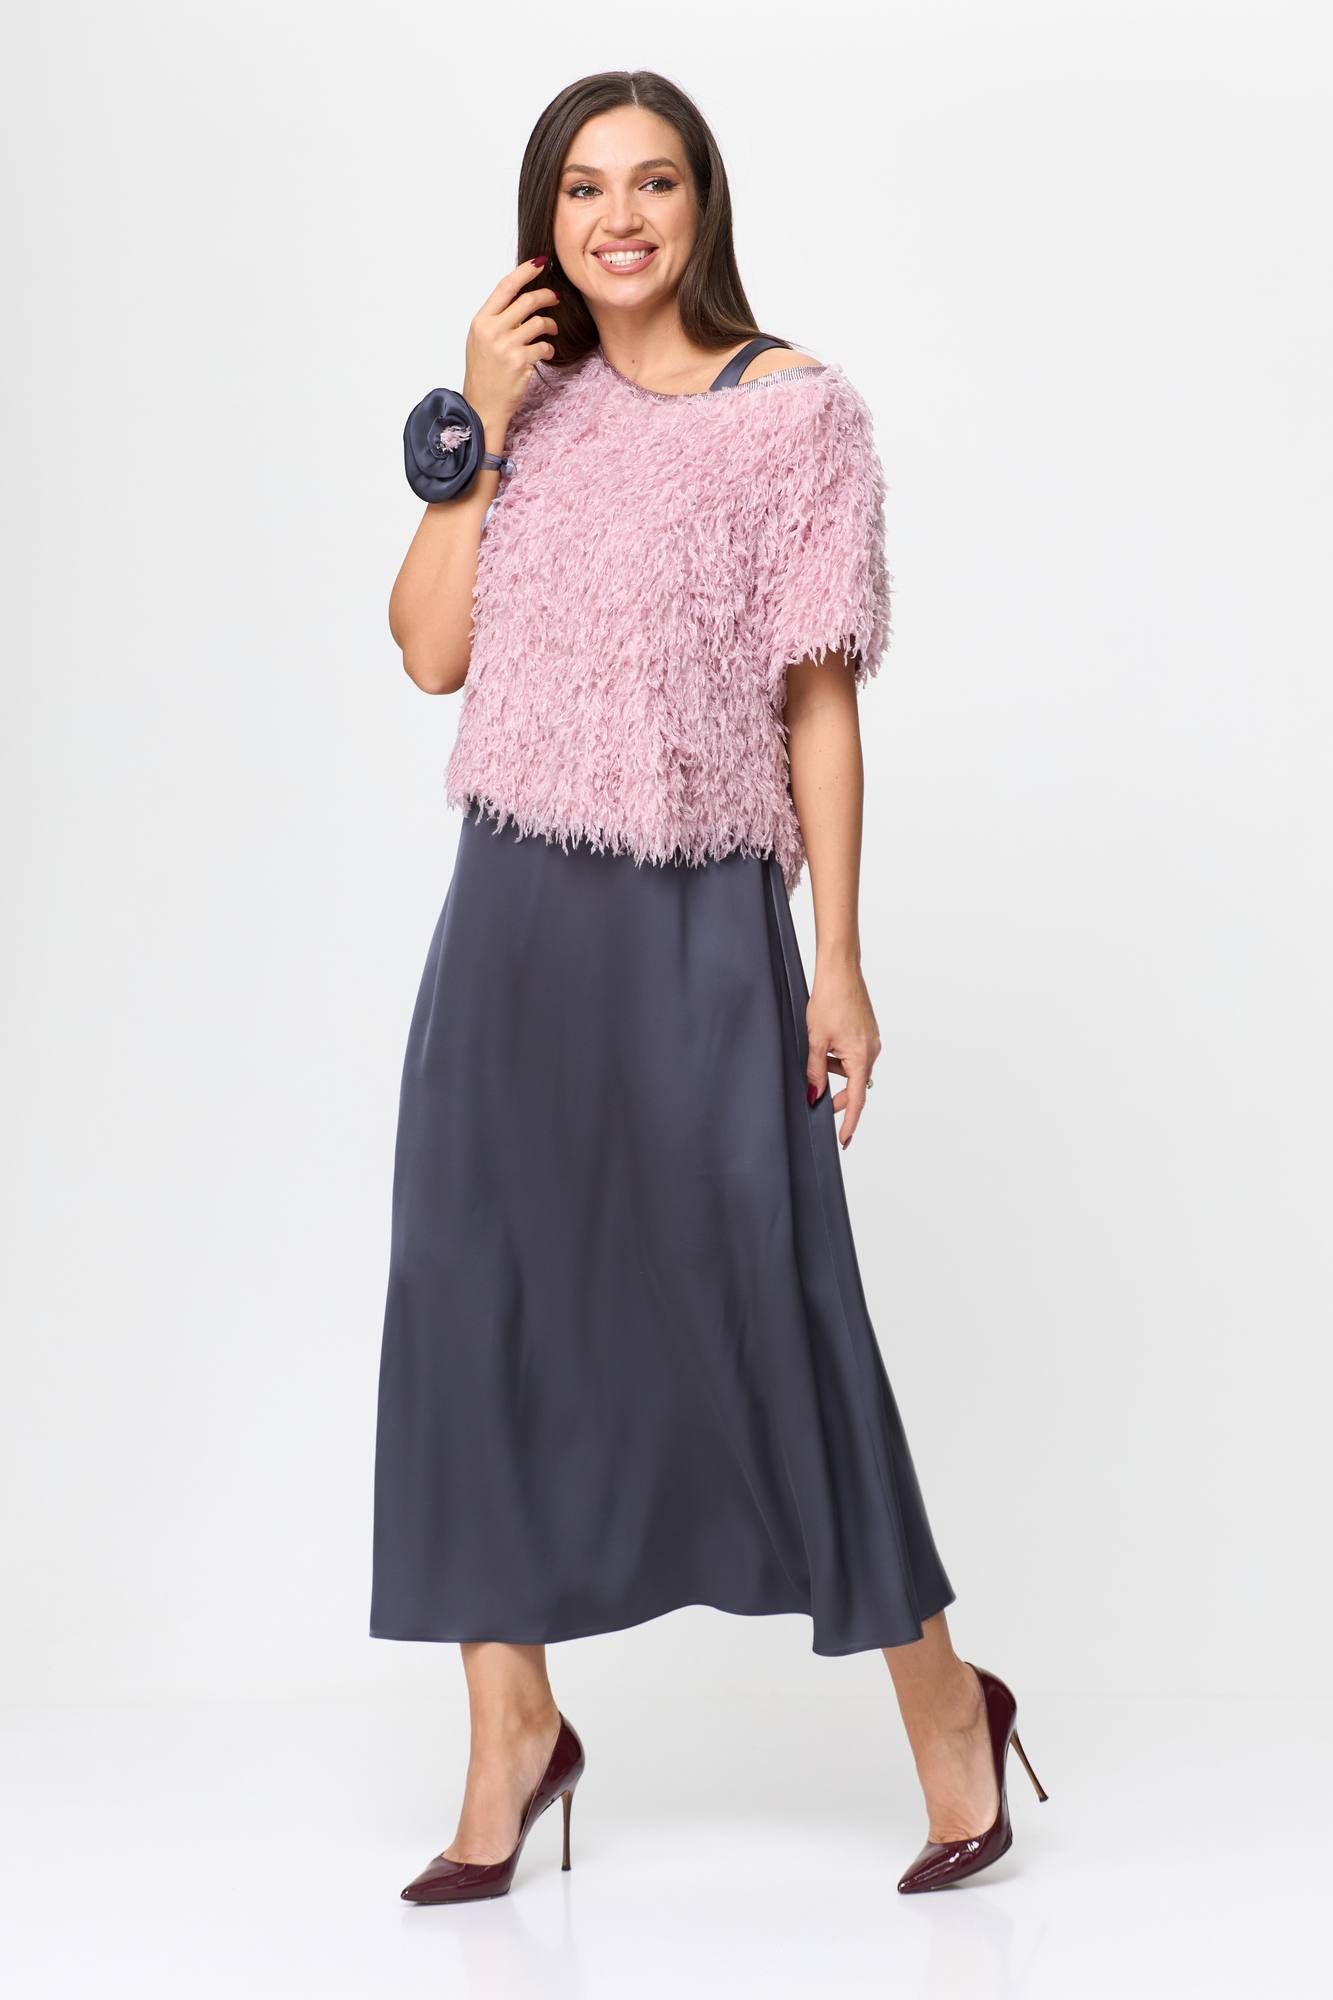 Комплекты с платьем Karina deLux M-1194 графит/розовый